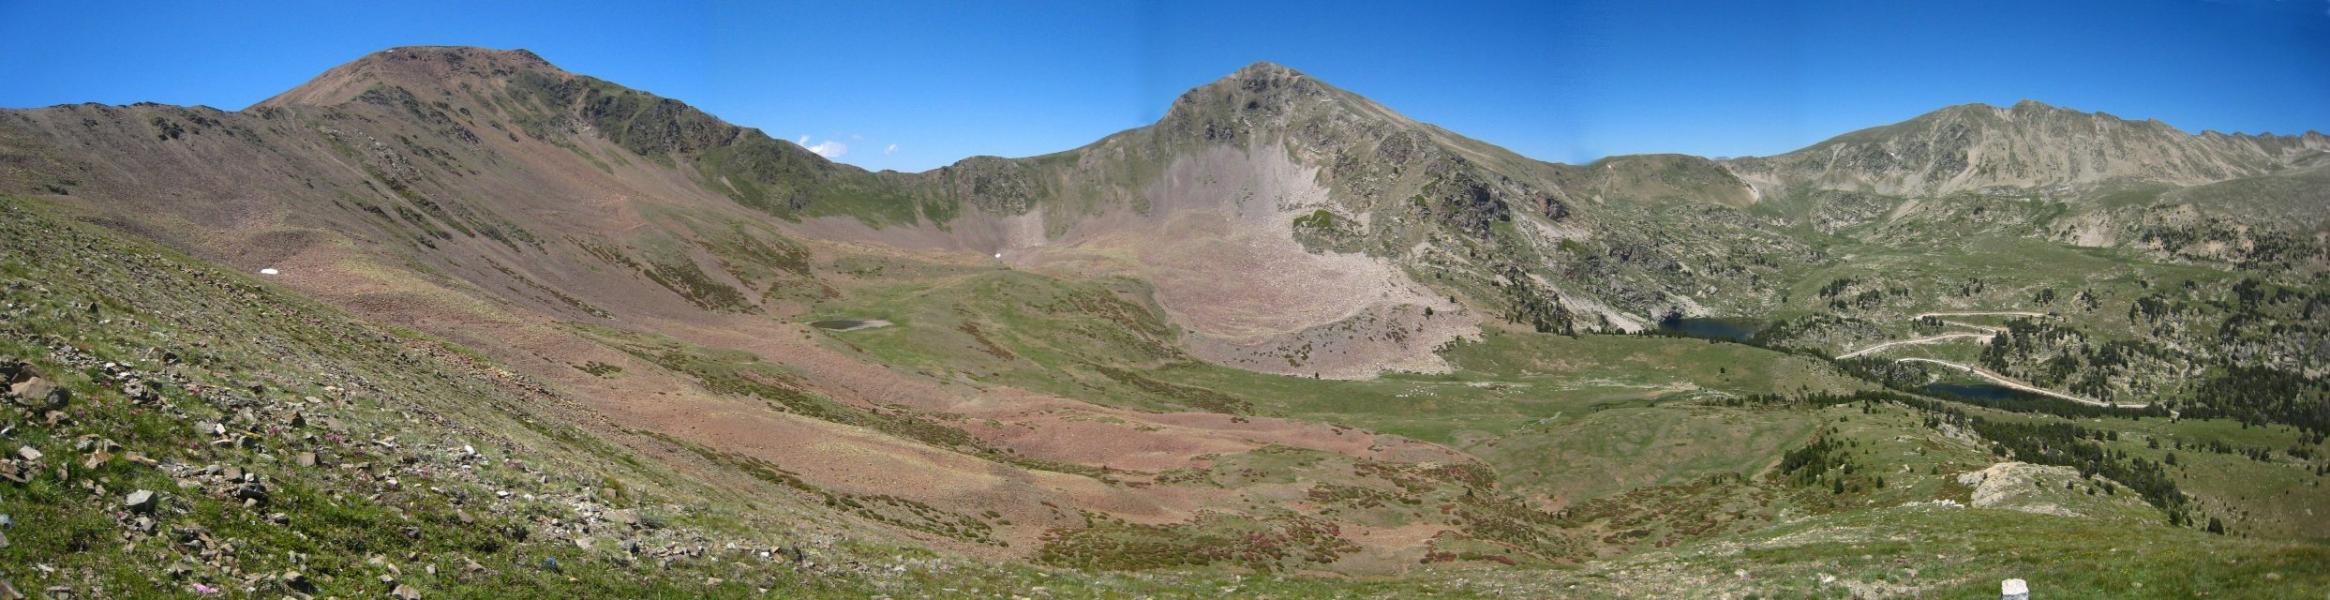 El Monturull (2761 m.), el Perafita (2752 m.) i entre els 2 el petit estanyol d'on surt el camí correcte